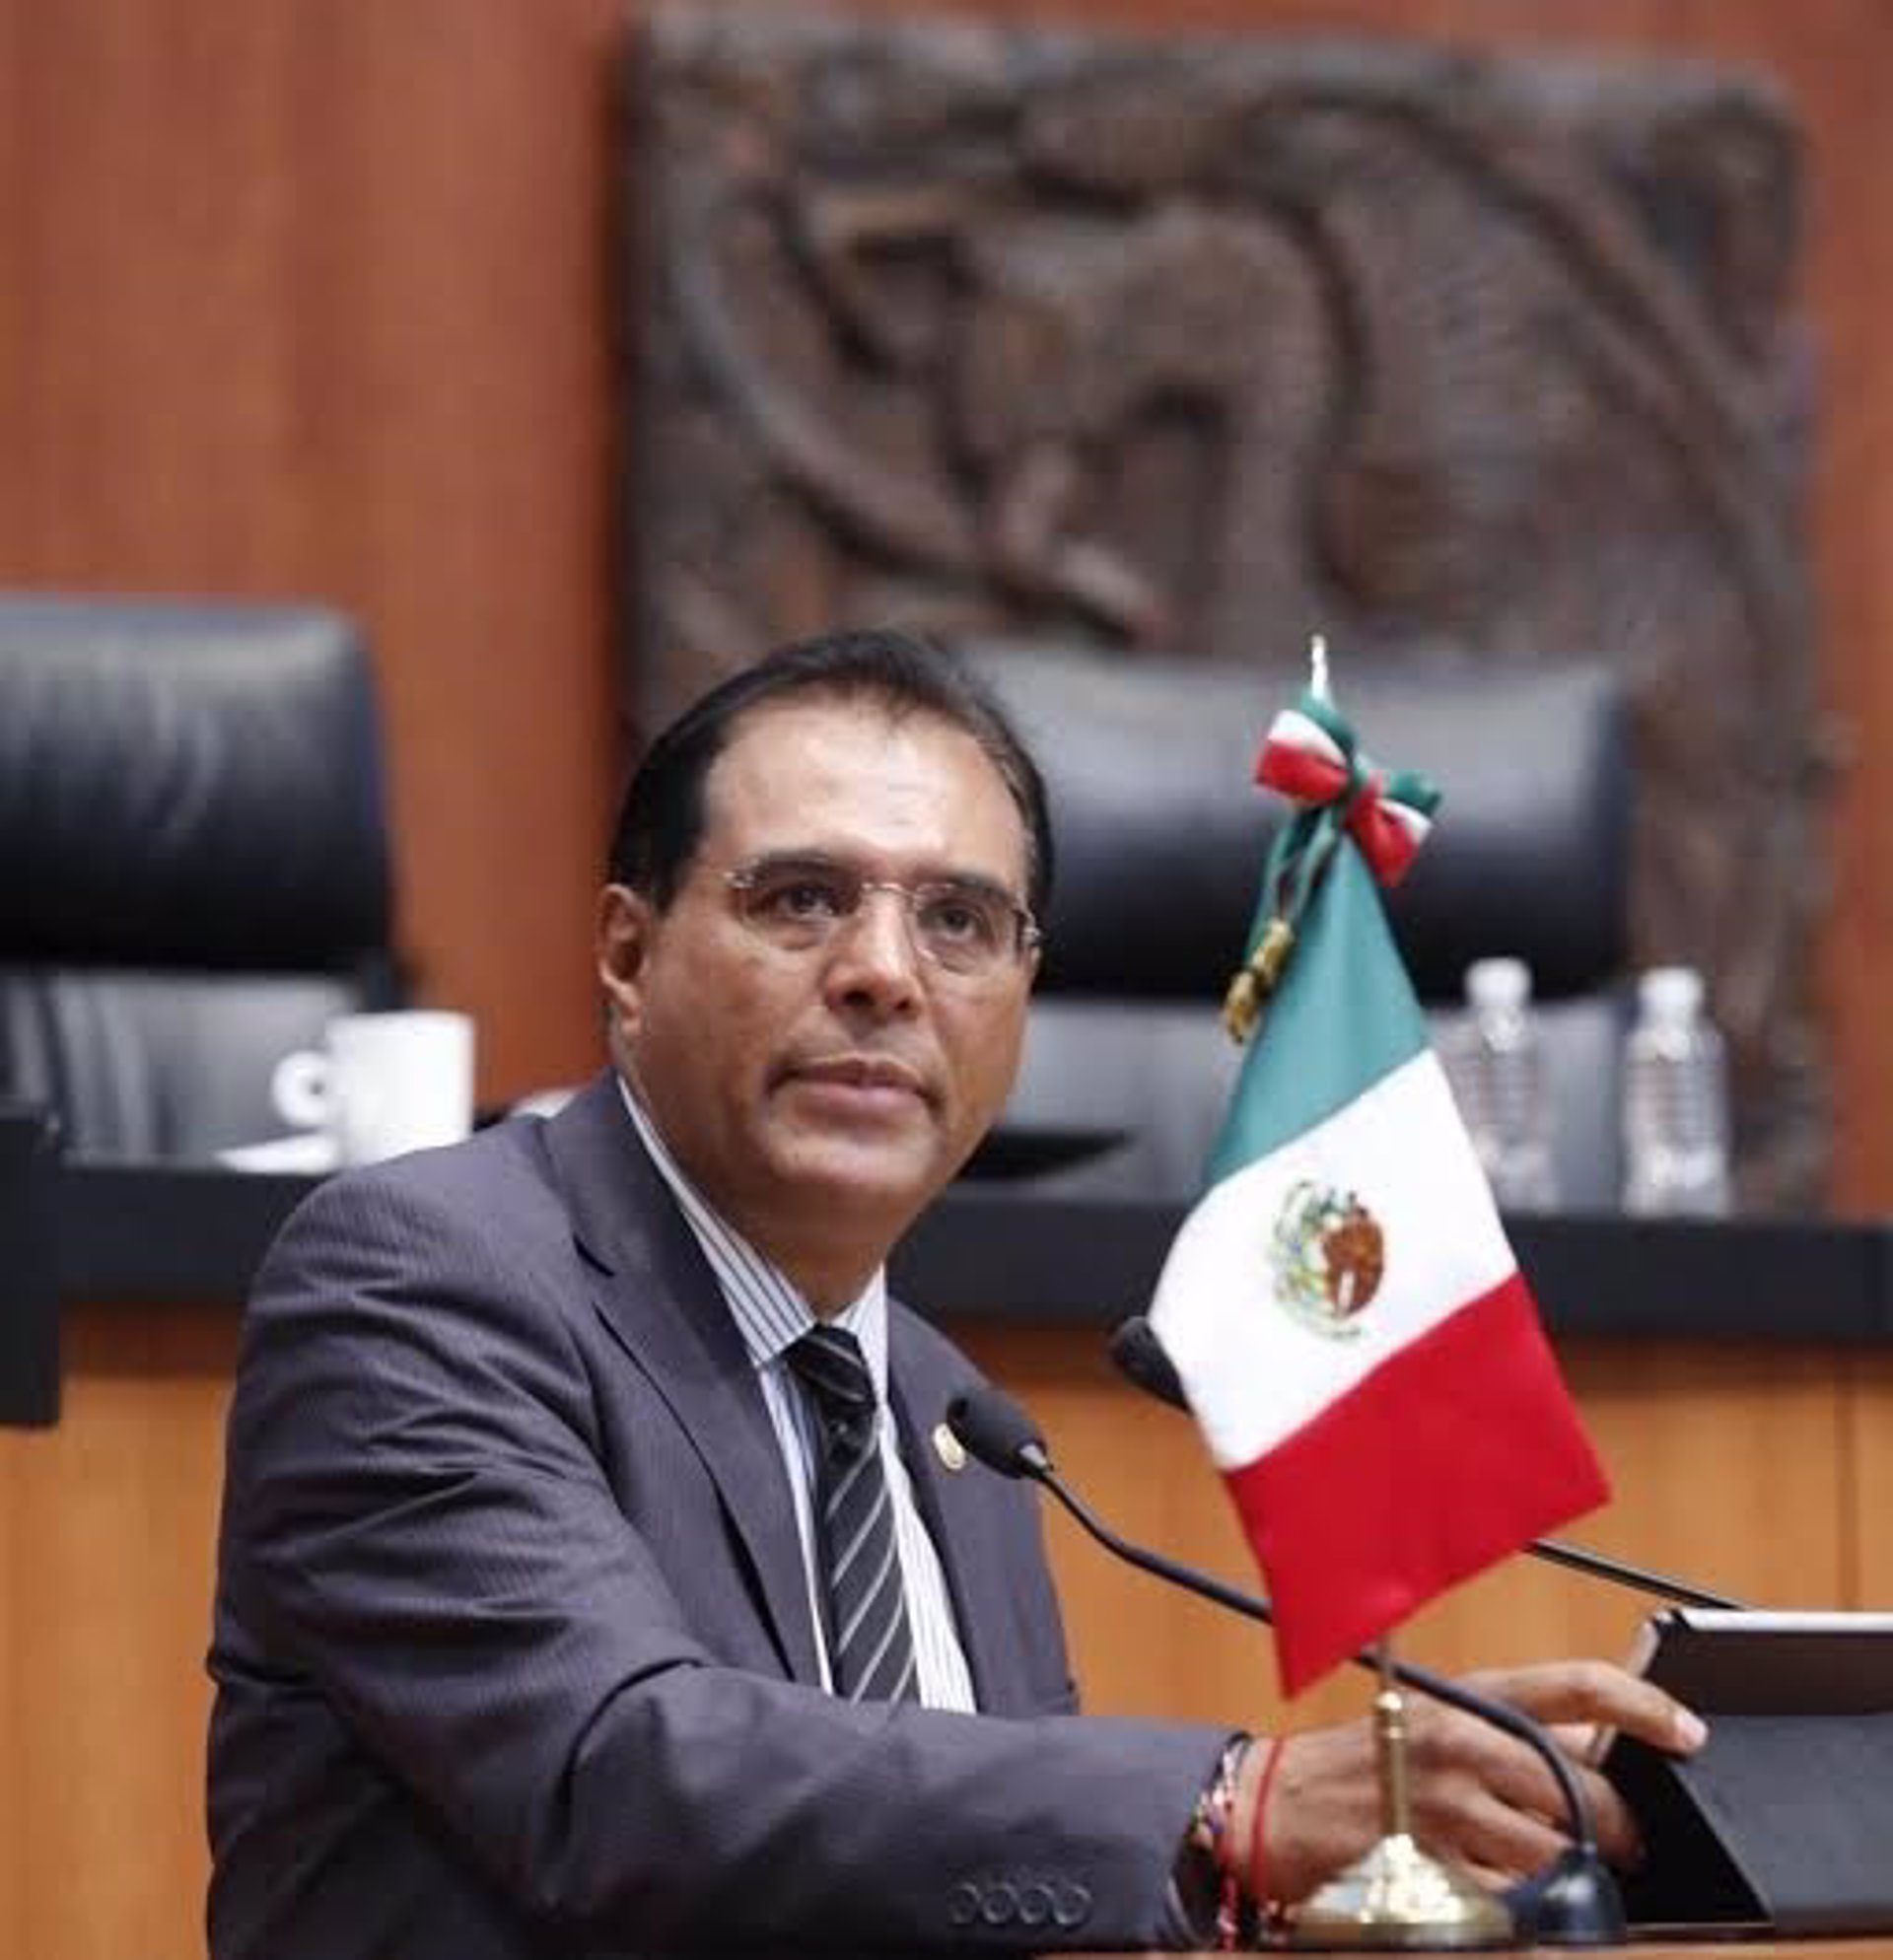 El senador de Oaxaca, Benjamín Robles presenta su renuncia al PRD